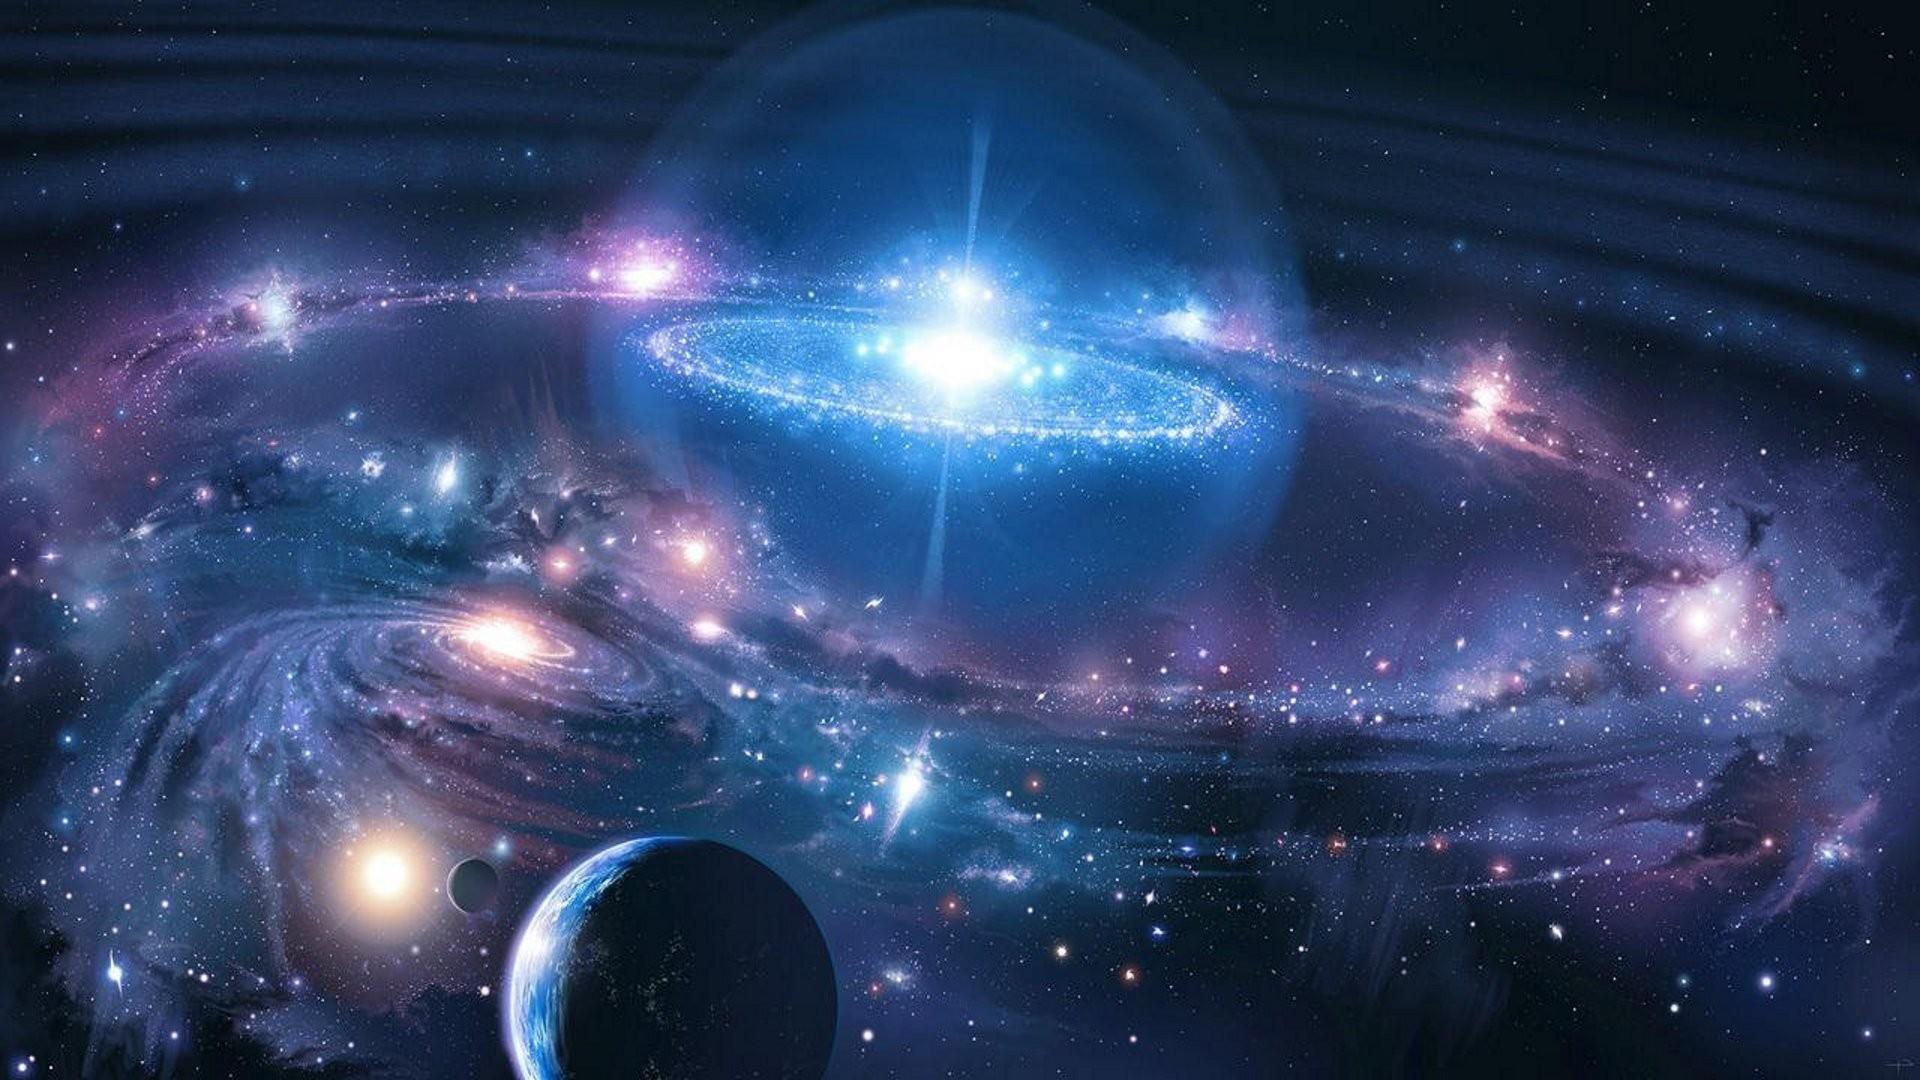 Vũ trụ là một thế giới kỳ diệu với những điều bí ẩn chưa được khám phá. Hãy xem hình ảnh liên quan để khám phá những vùng trời đầy mê hoặc và sự đa dạng của vũ trụ.